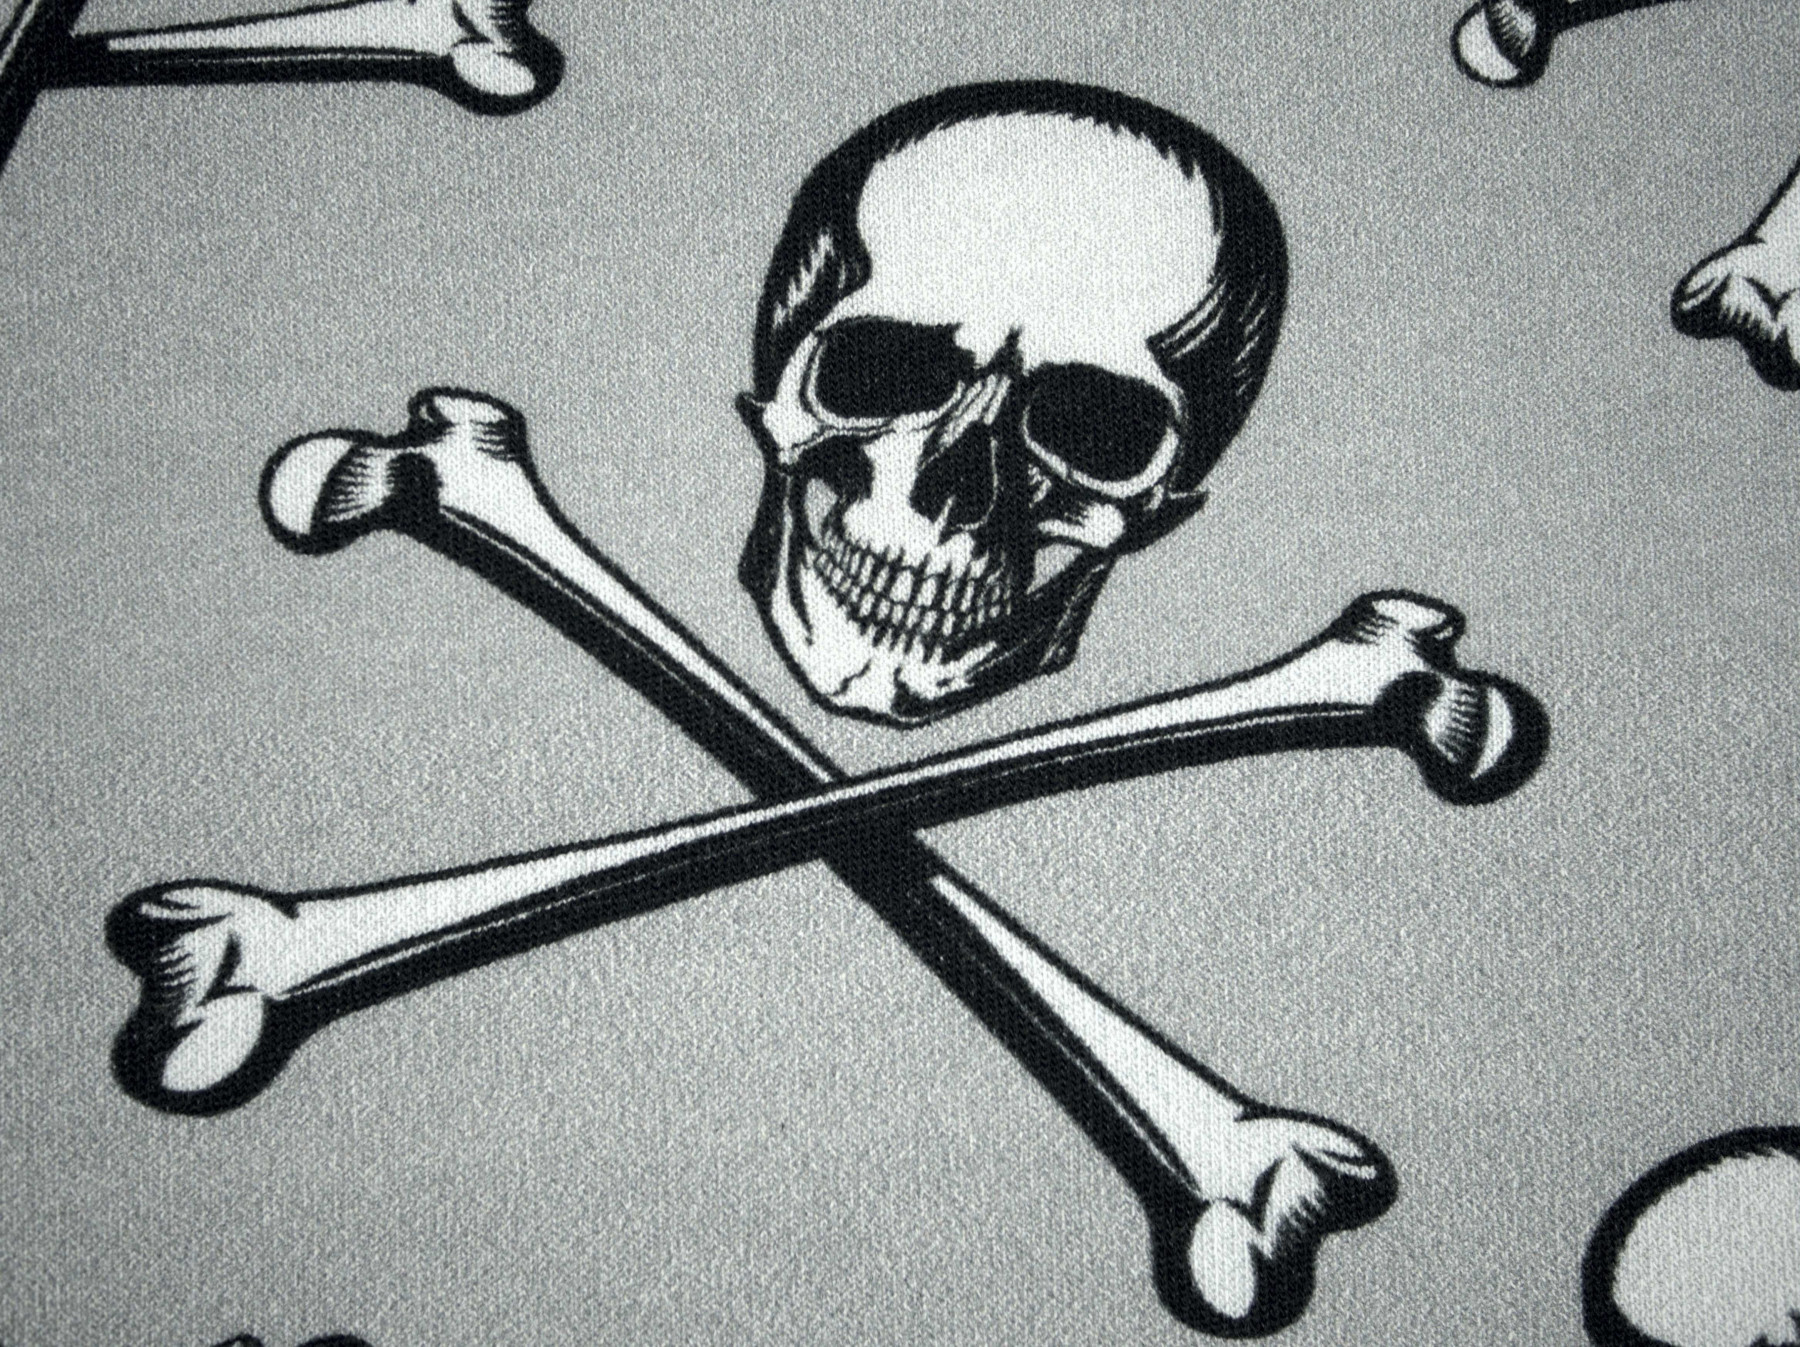 Skulls and bones - looped knit SP250